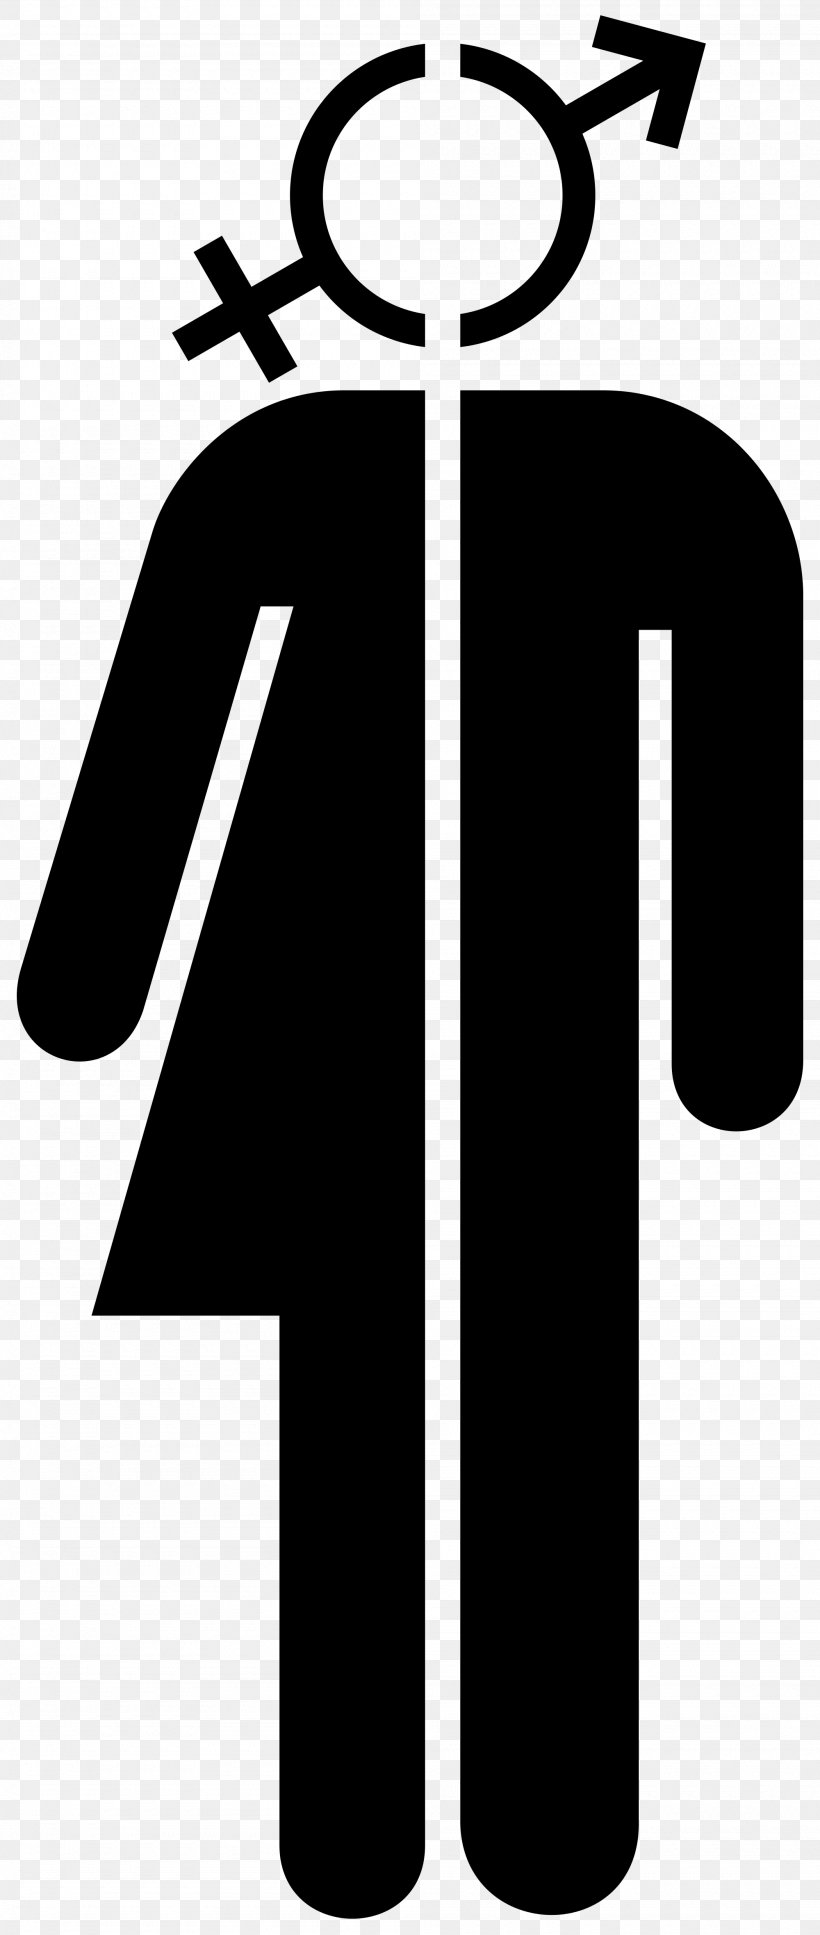 Female Unisex Symbol Sign, PNG, 2000x4720px, Female, Black, Black And White, Gender, Gender Symbol Download Free